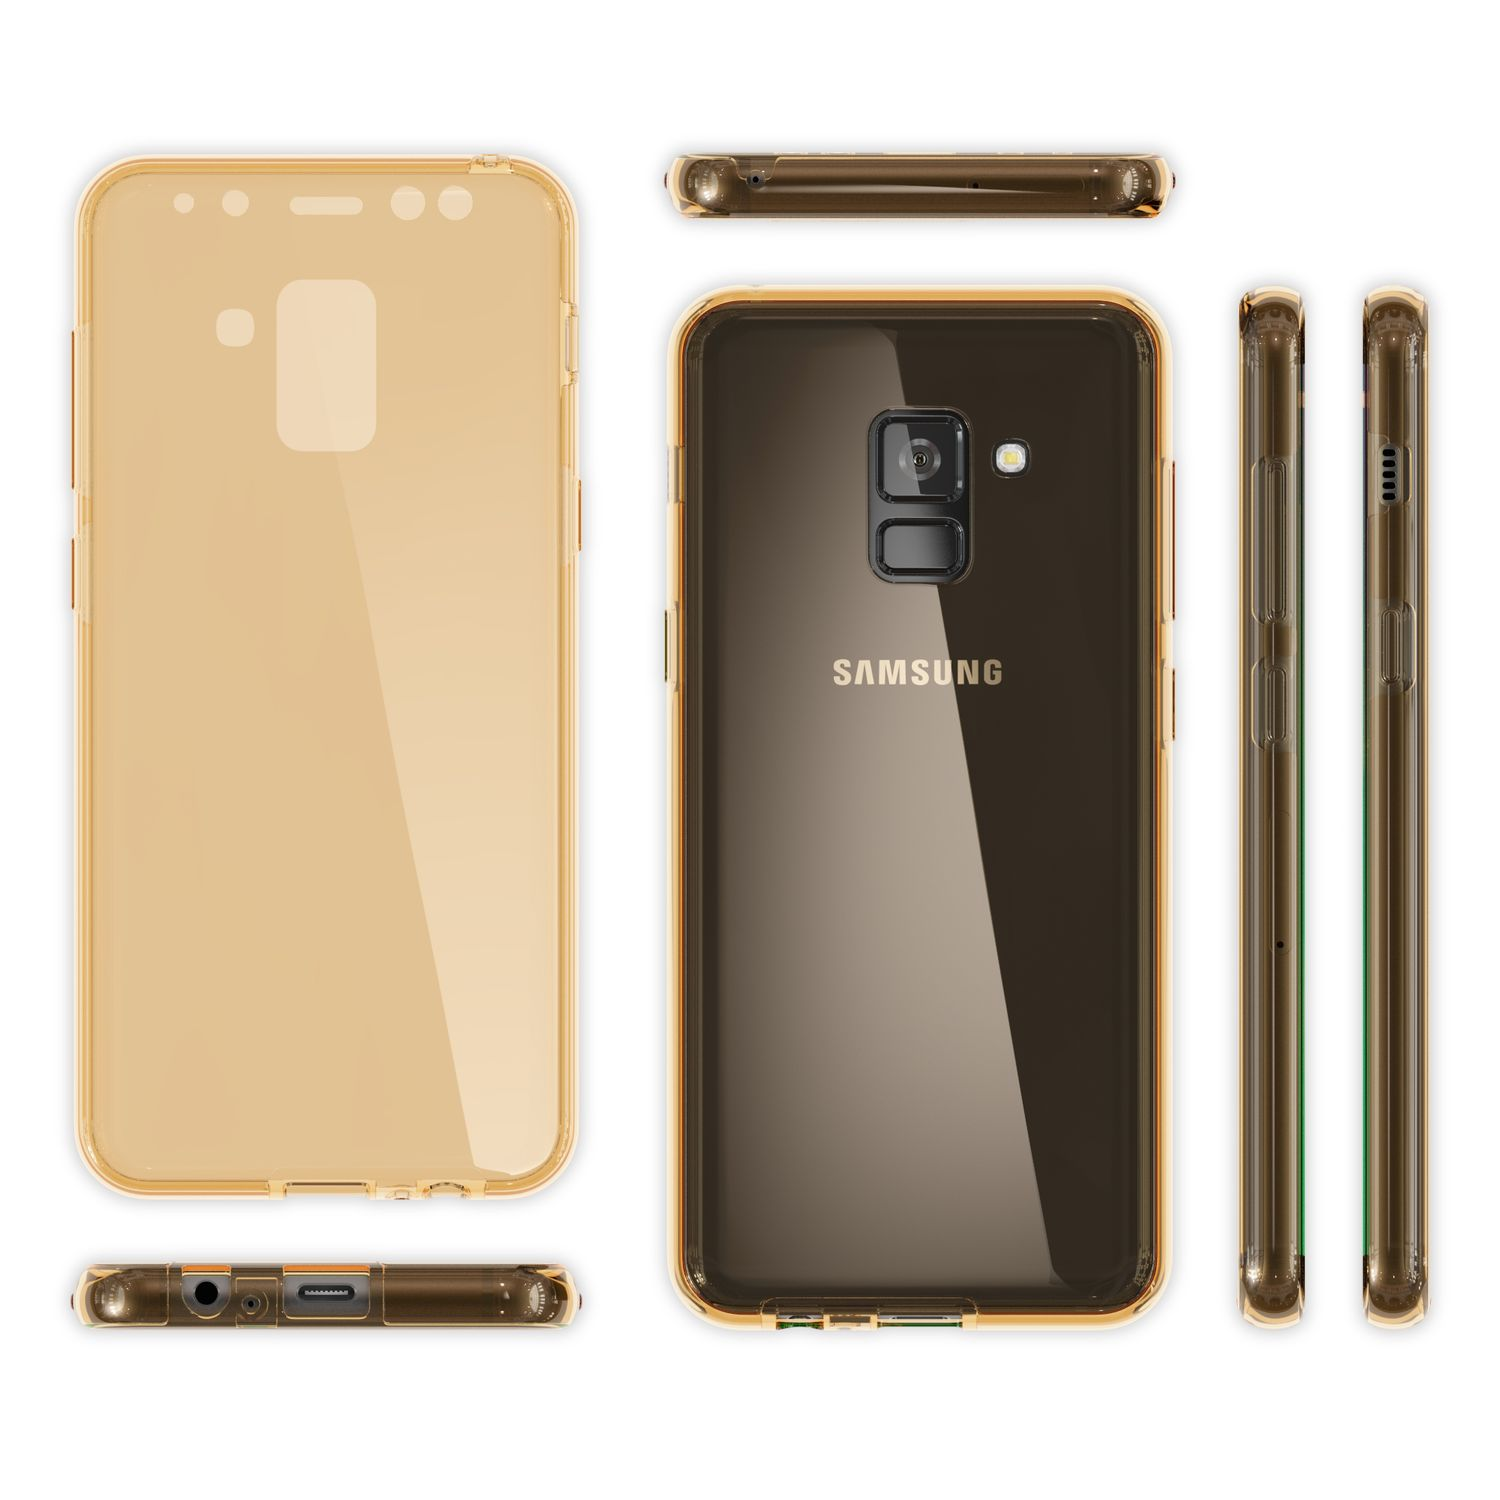 NALIA 360 Grad Hülle, A8 Gold Backcover, (2018), Samsung, Galaxy